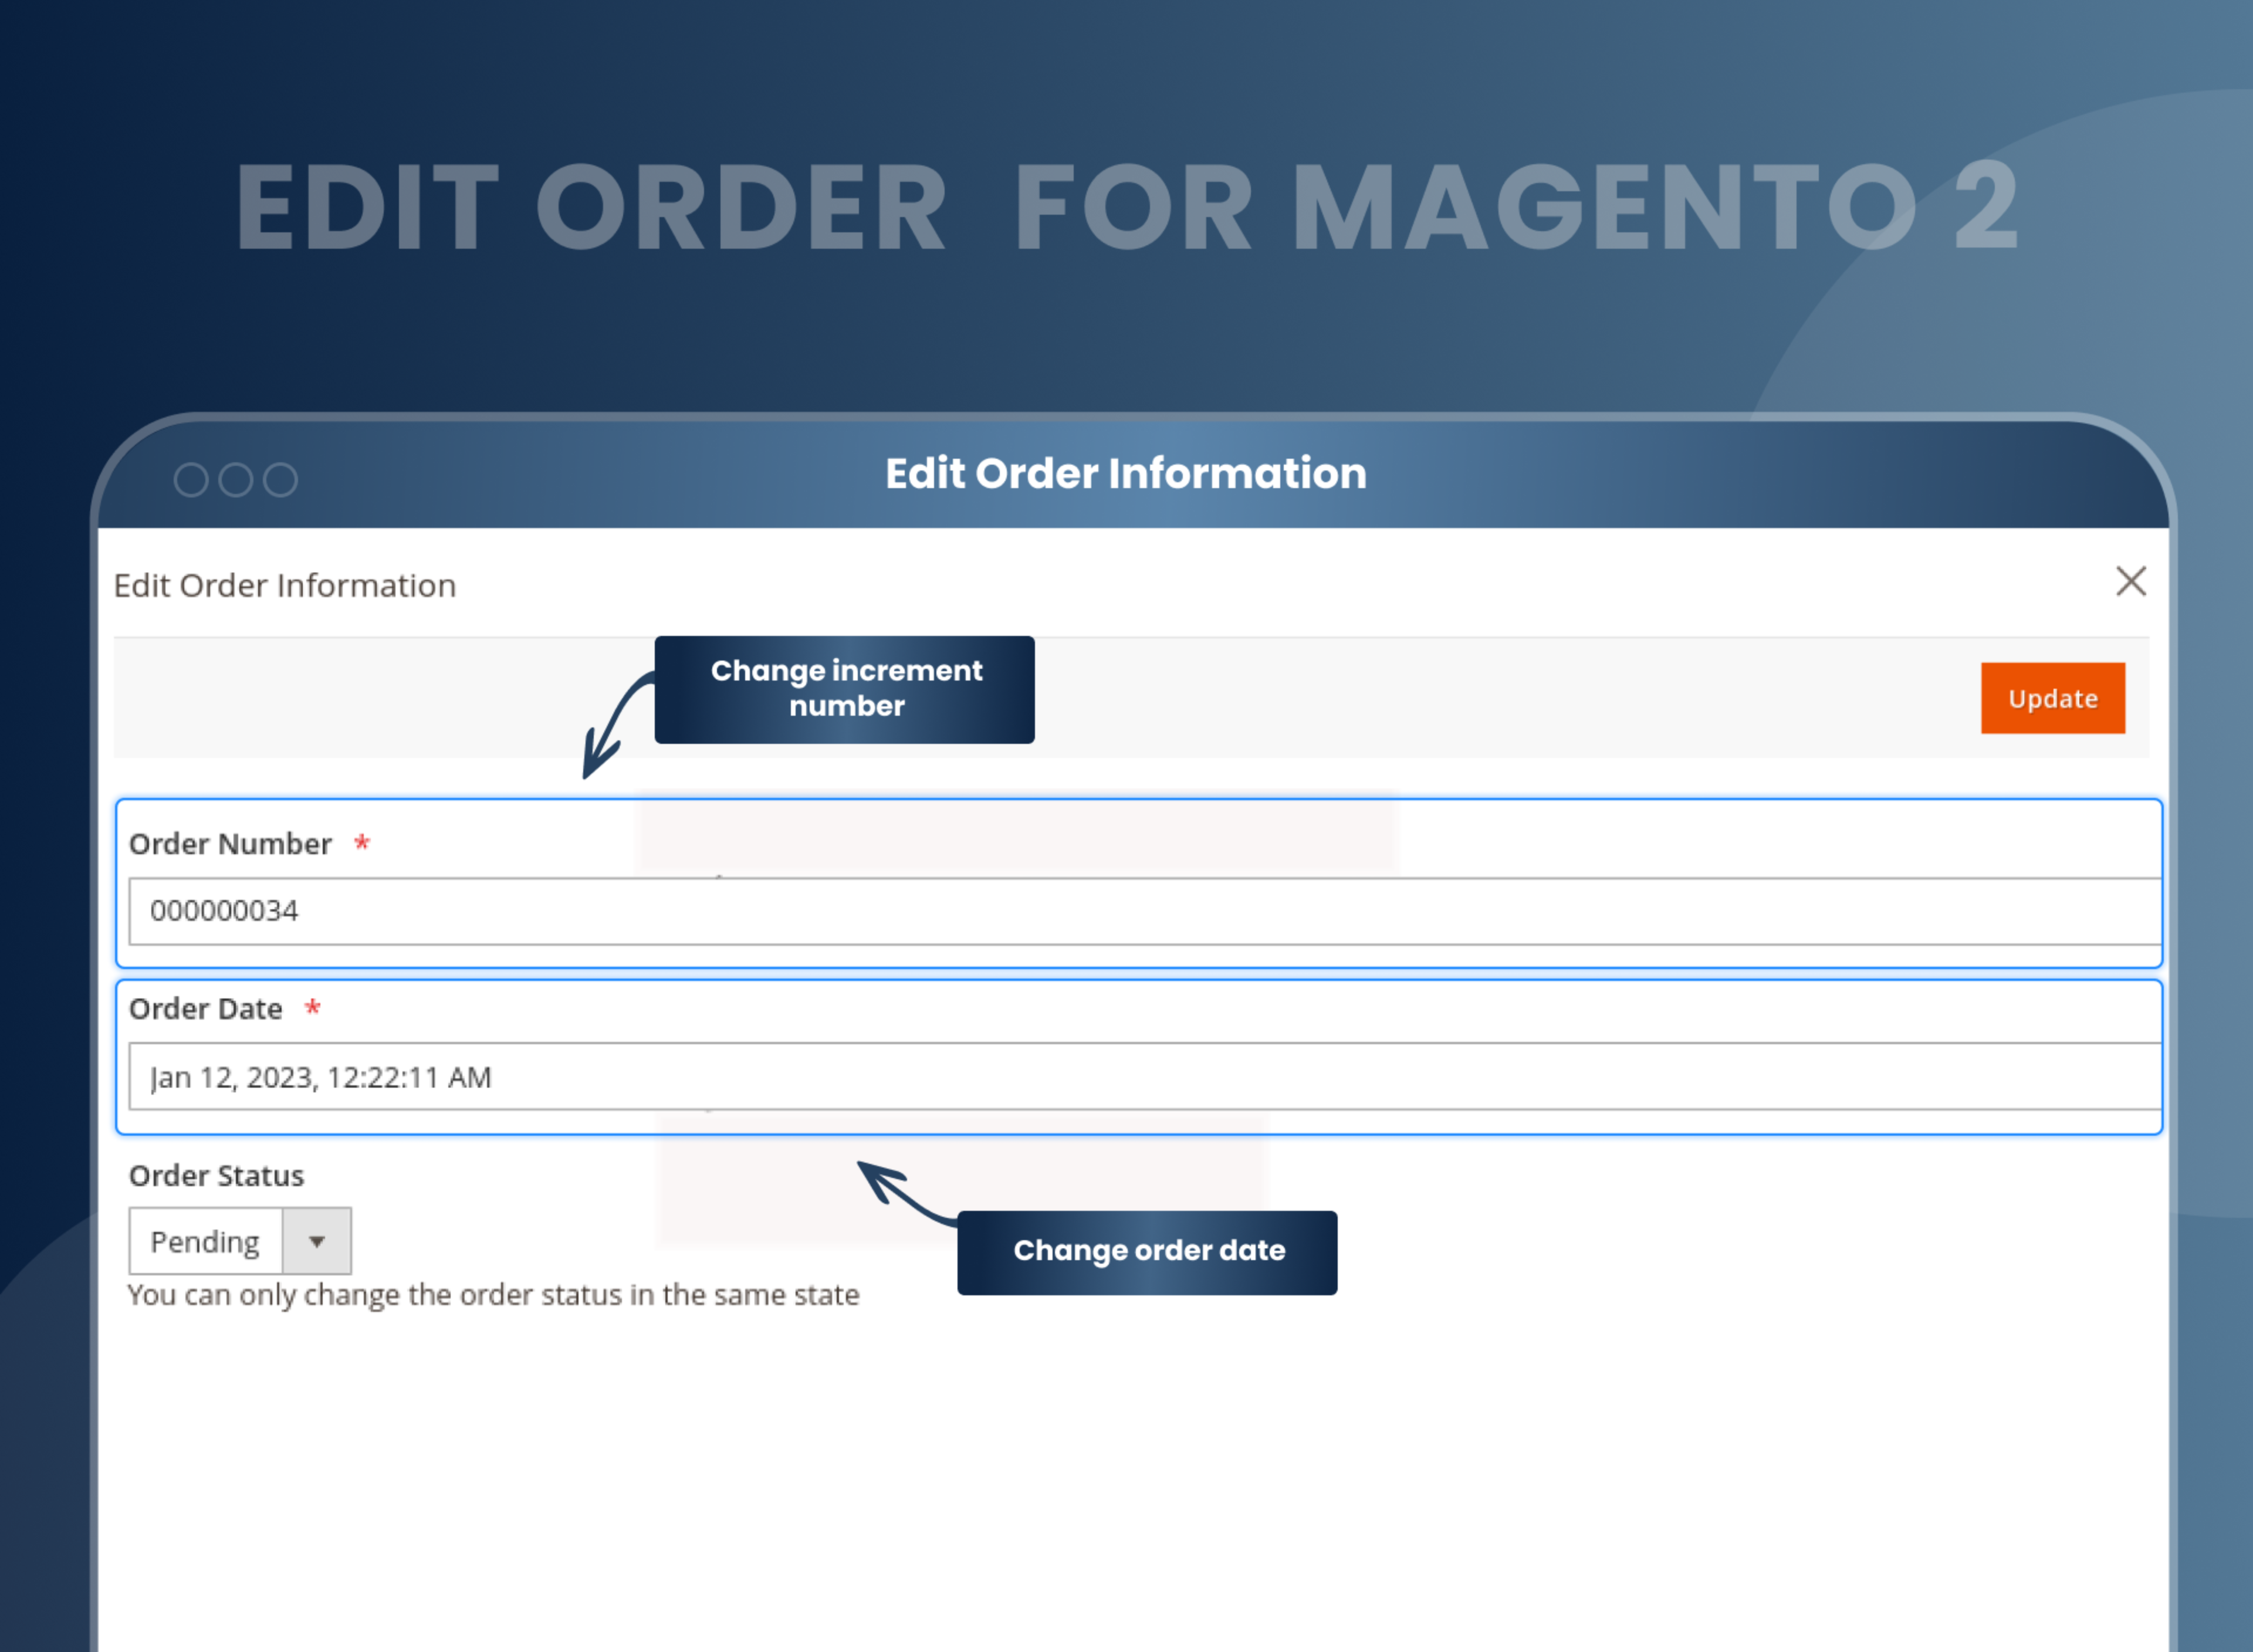 Edit Order Information